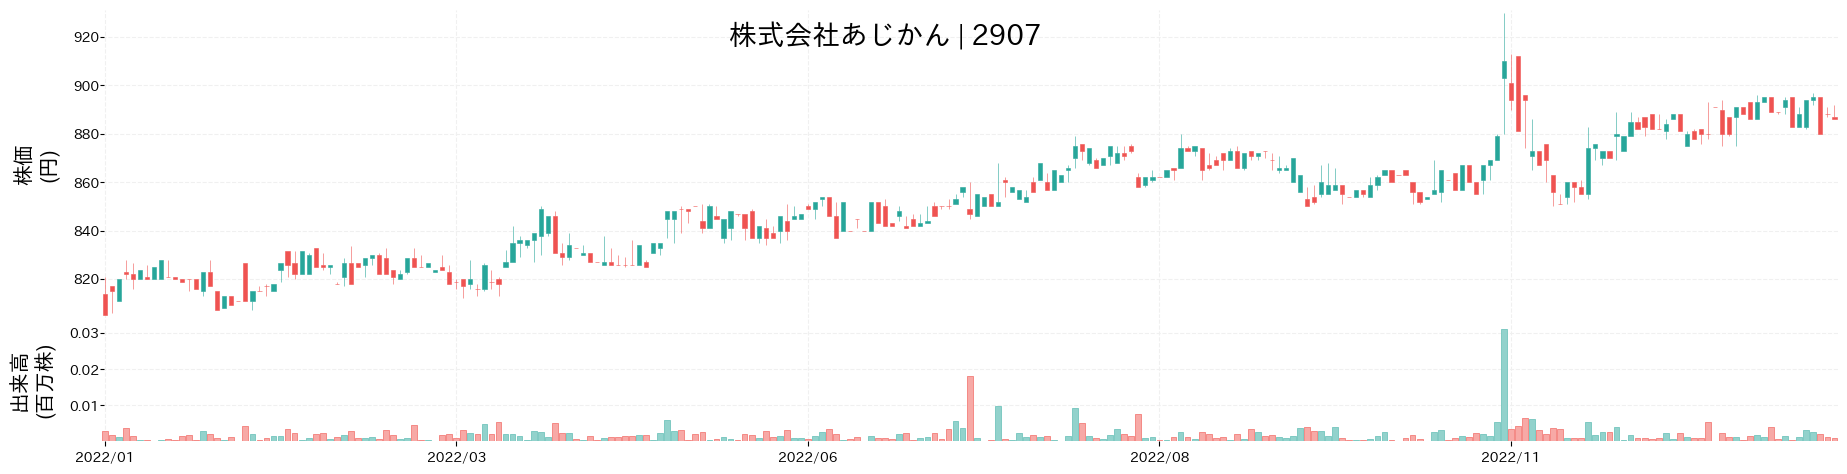 あじかんの株価推移(2022)